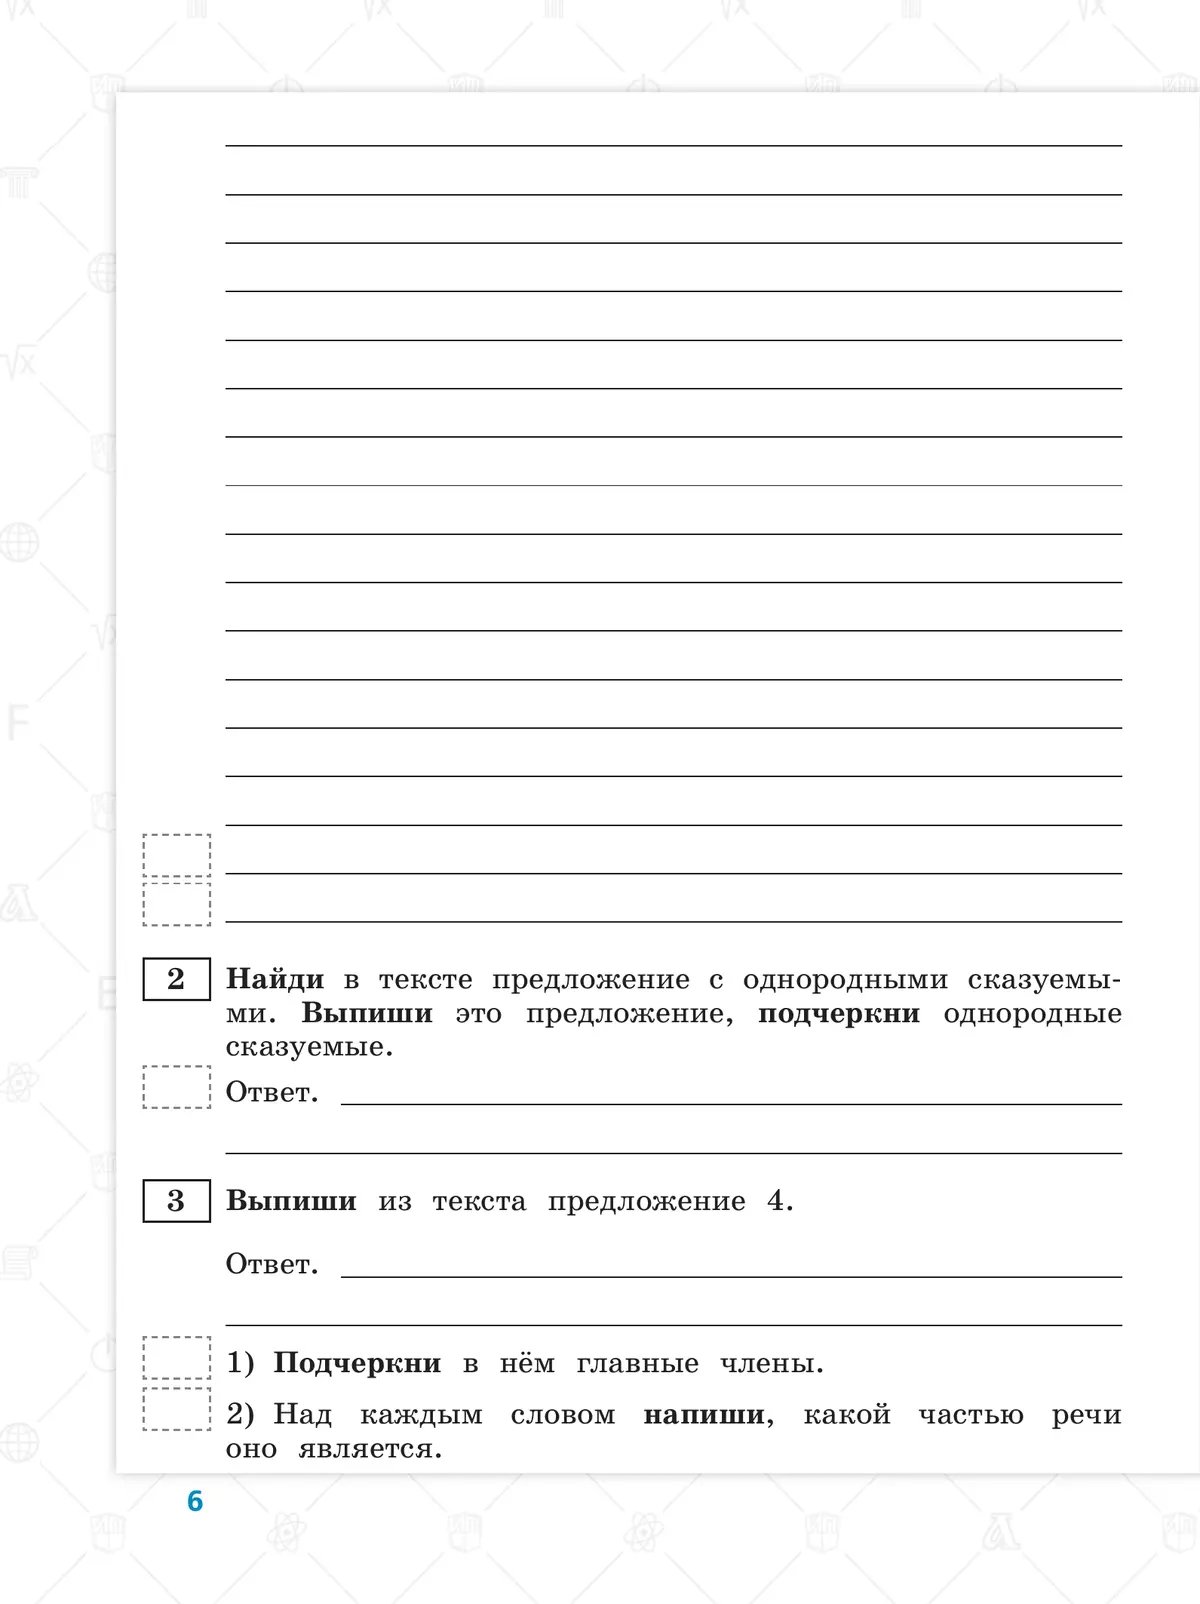 Всероссийские проверочные работы. Русский язык. 10 типовых вариантов. 4 класс 11